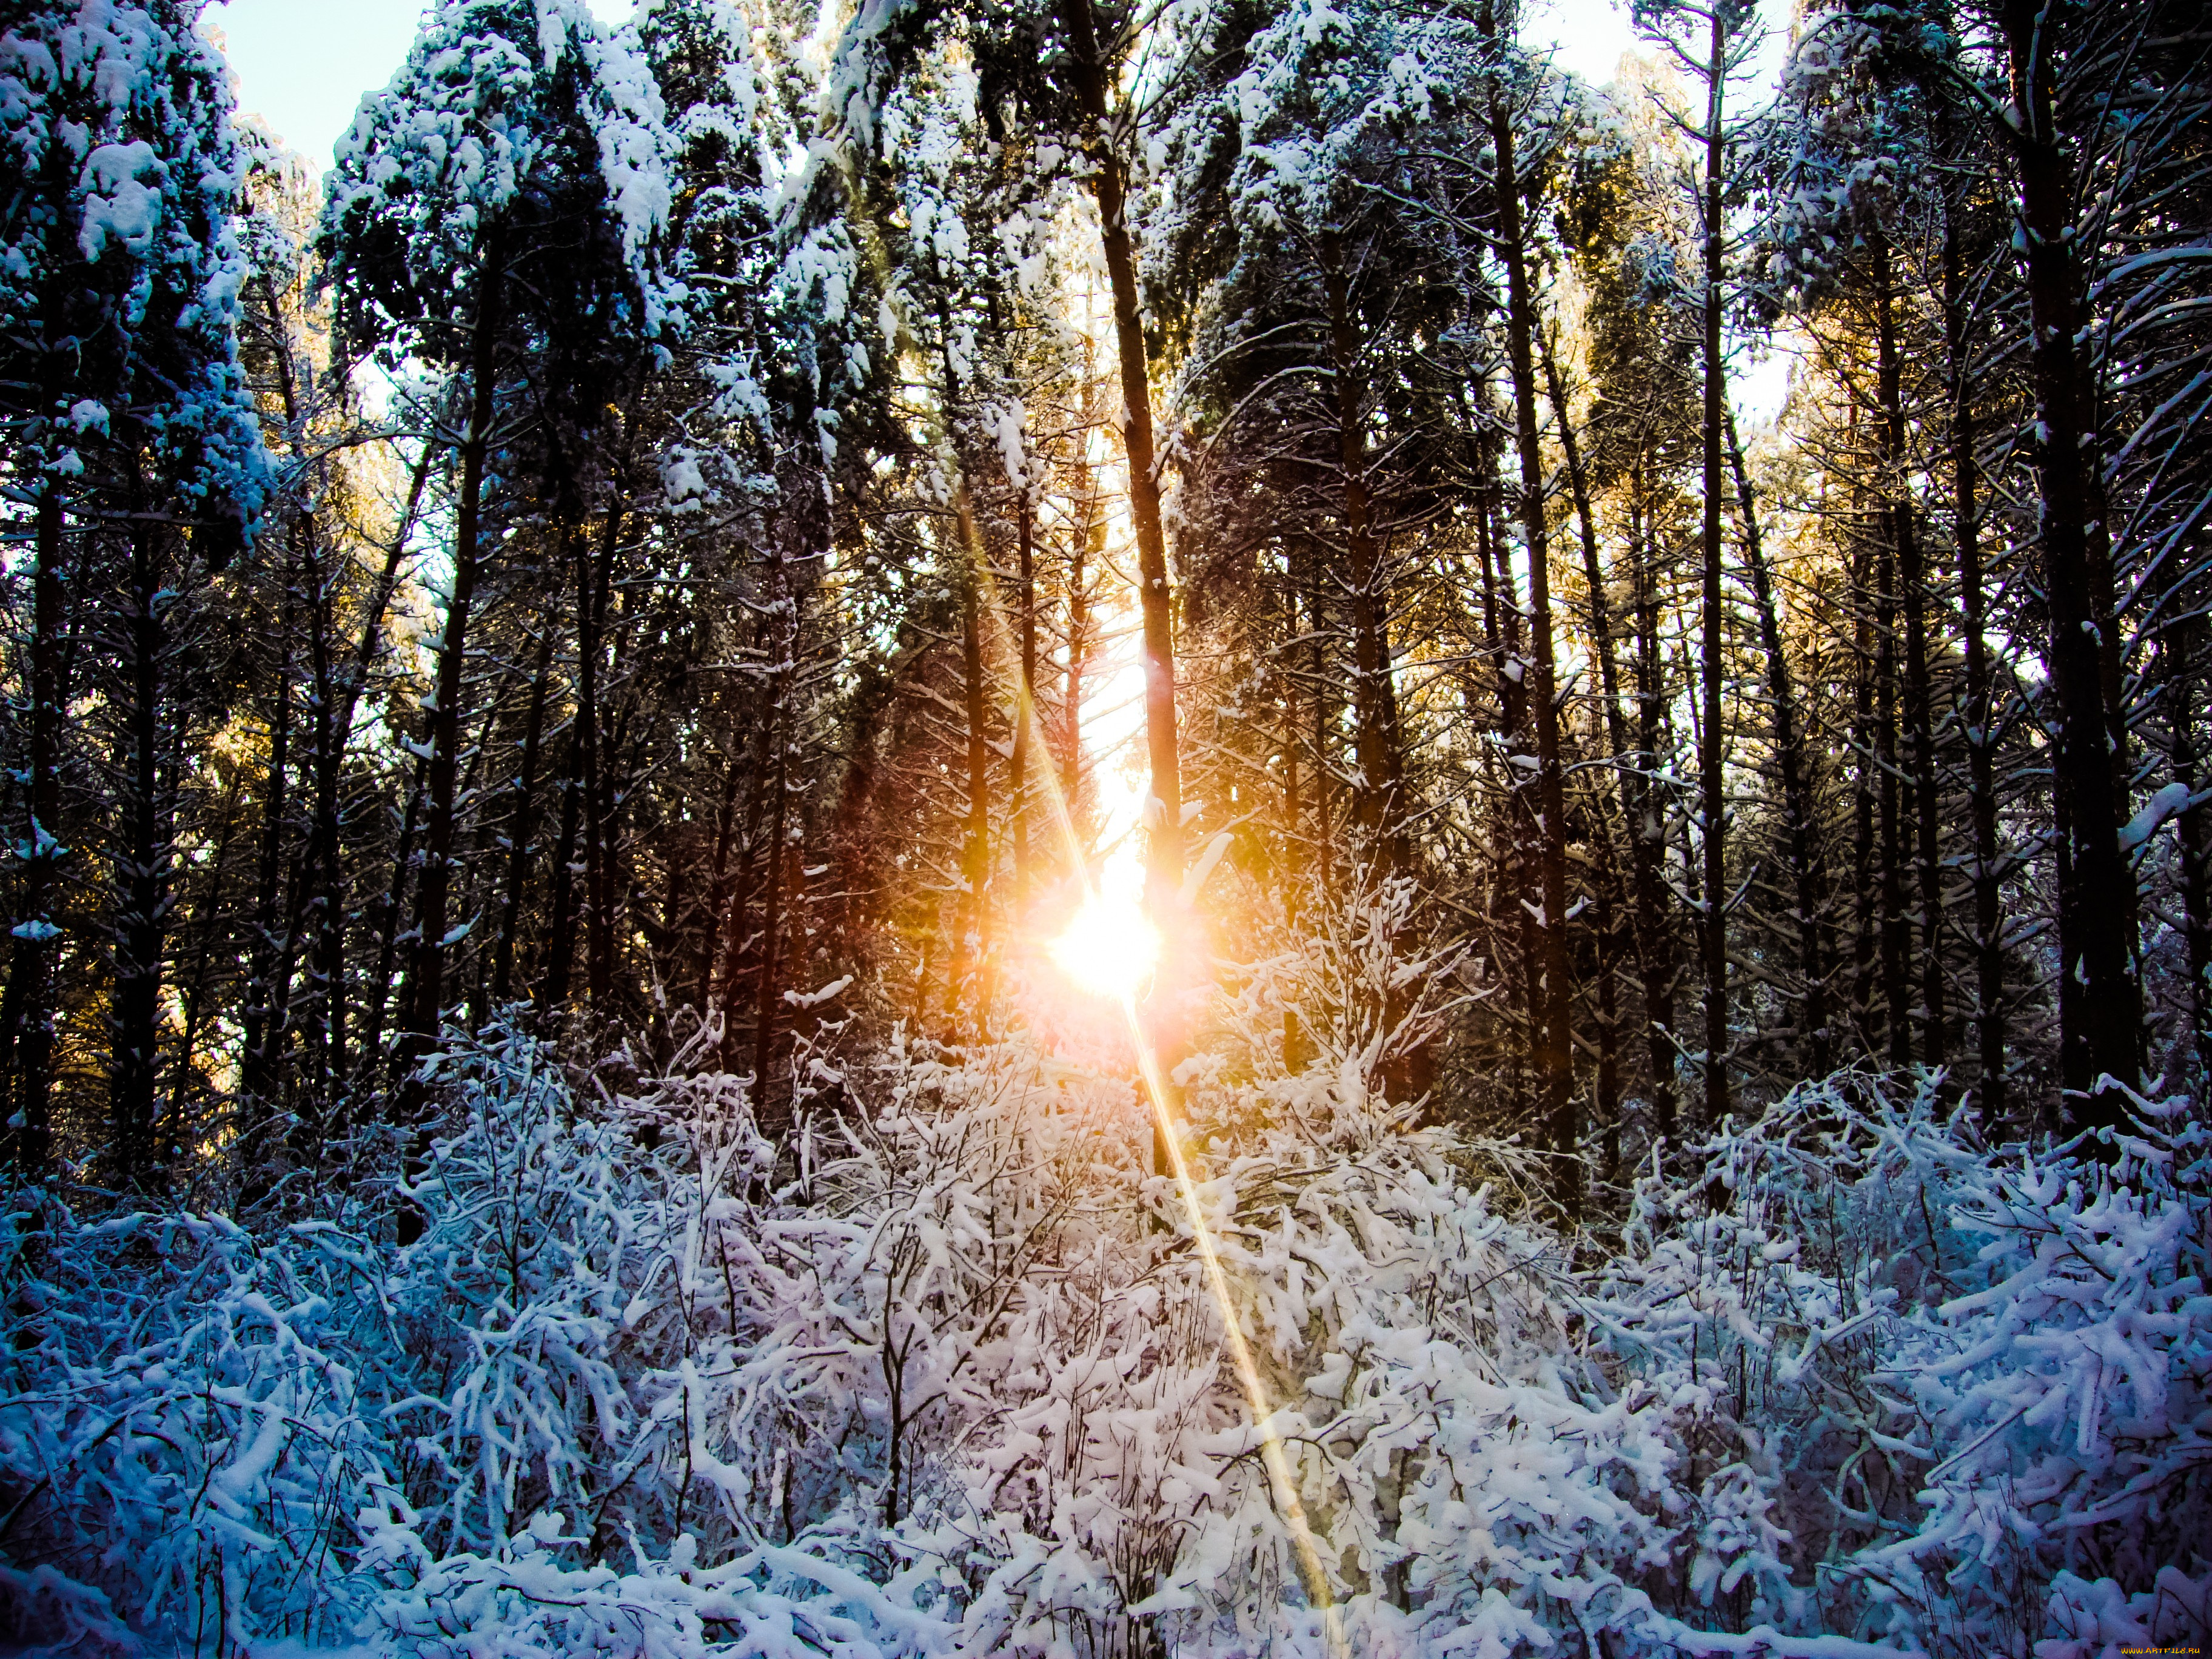 Фф и в морозном лесу я навеки. Зимний лес. Зима солнце. Зимний лес солнце. Утро в зимнем лесу.